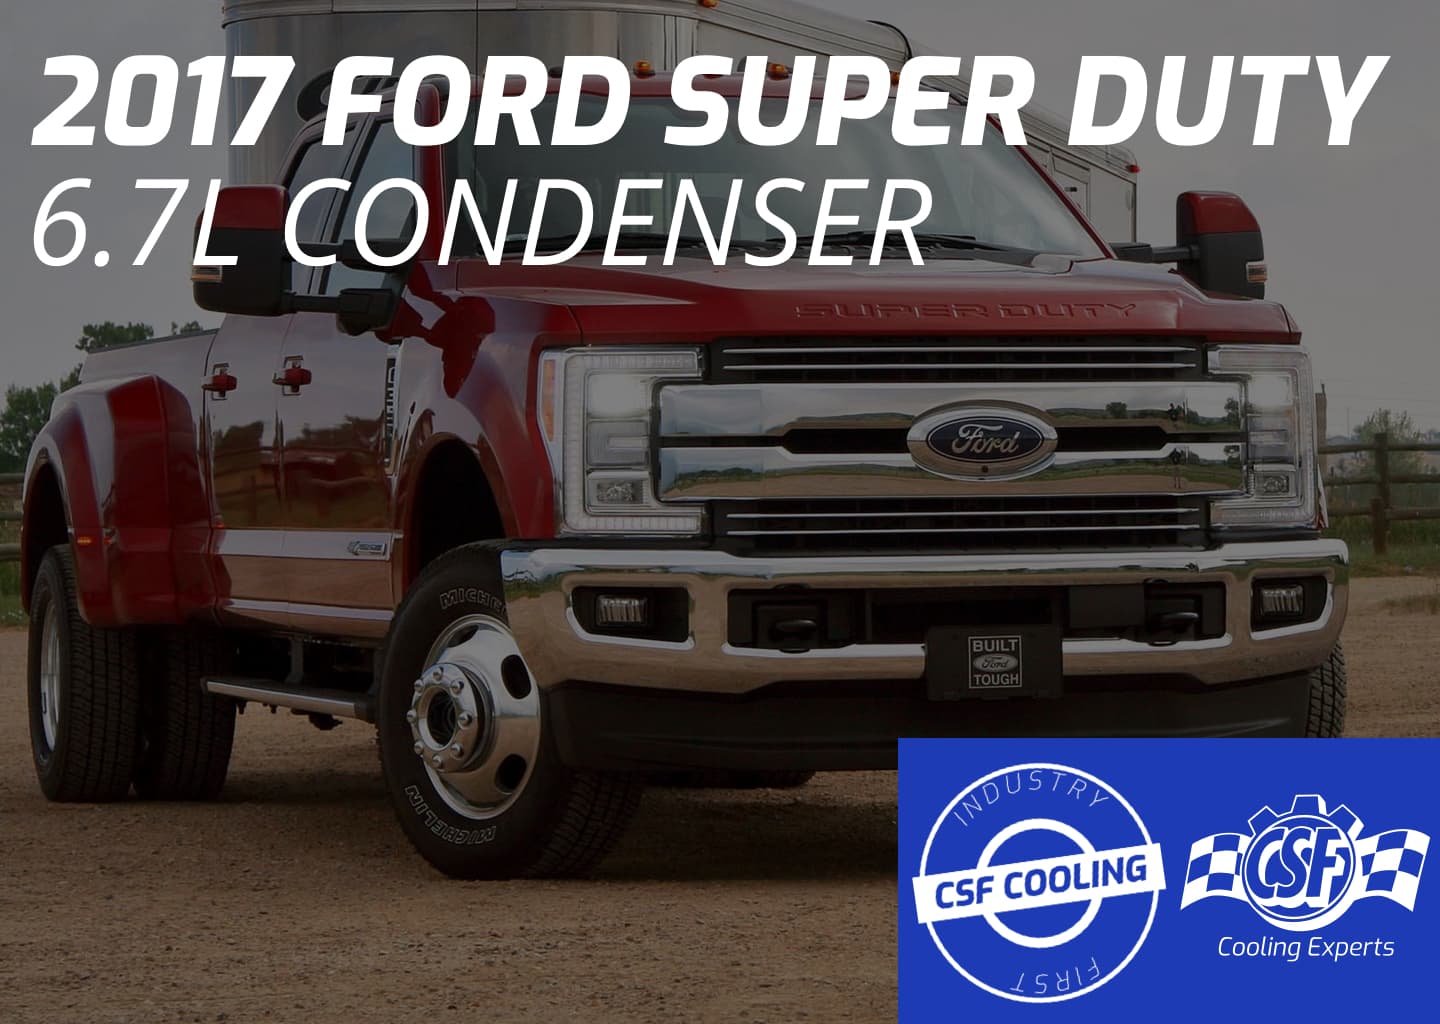 Ford Super Duty 6.7L Condenser